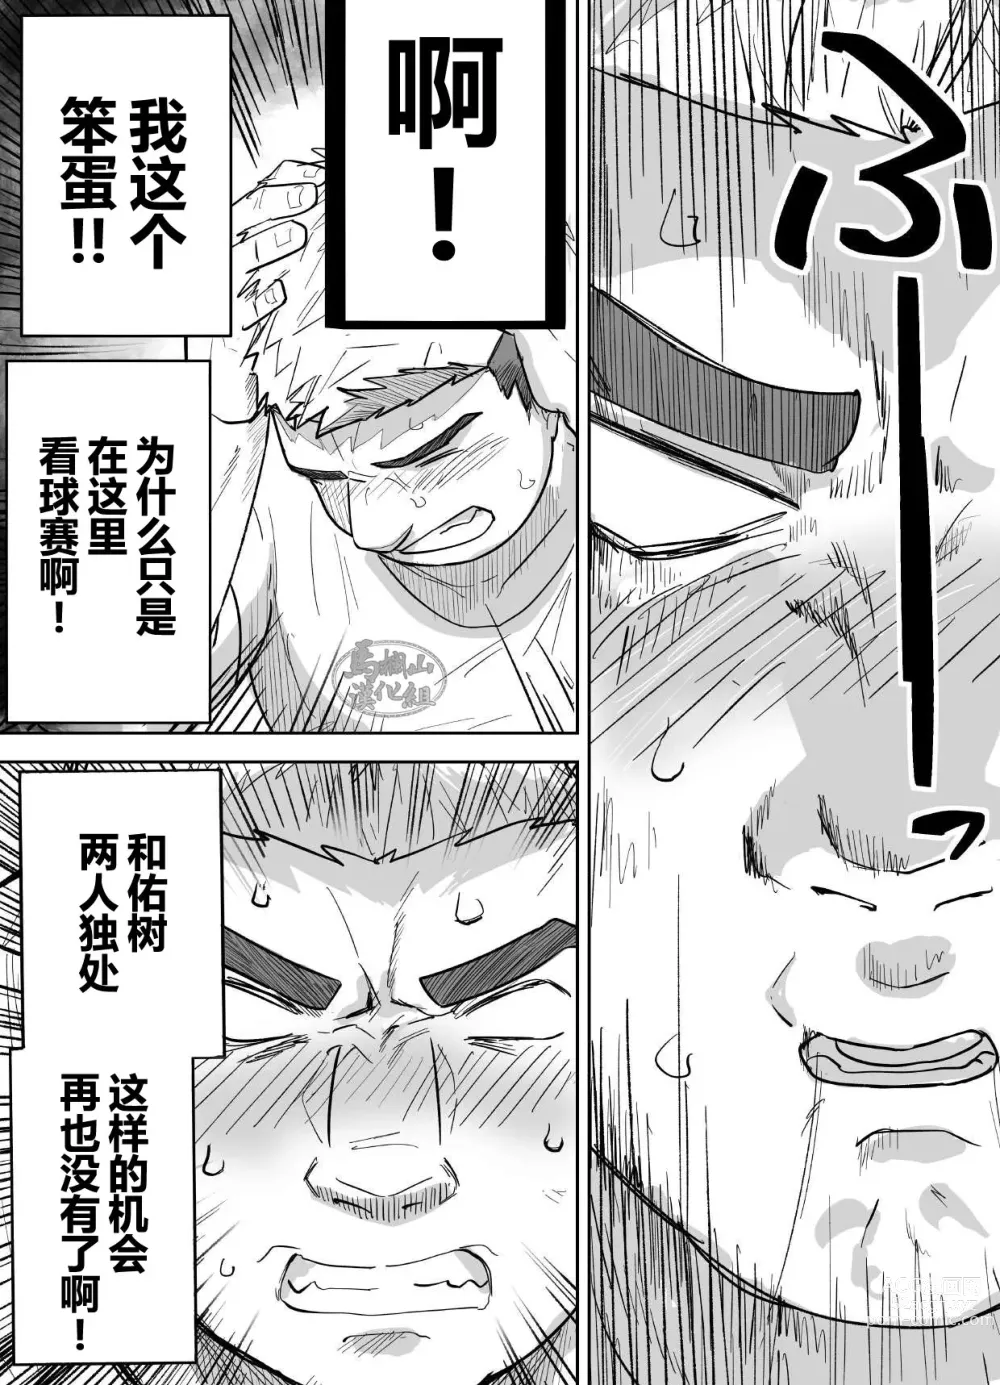 Page 6 of manga 片思いしてるガチムチ同級生に襲われる話